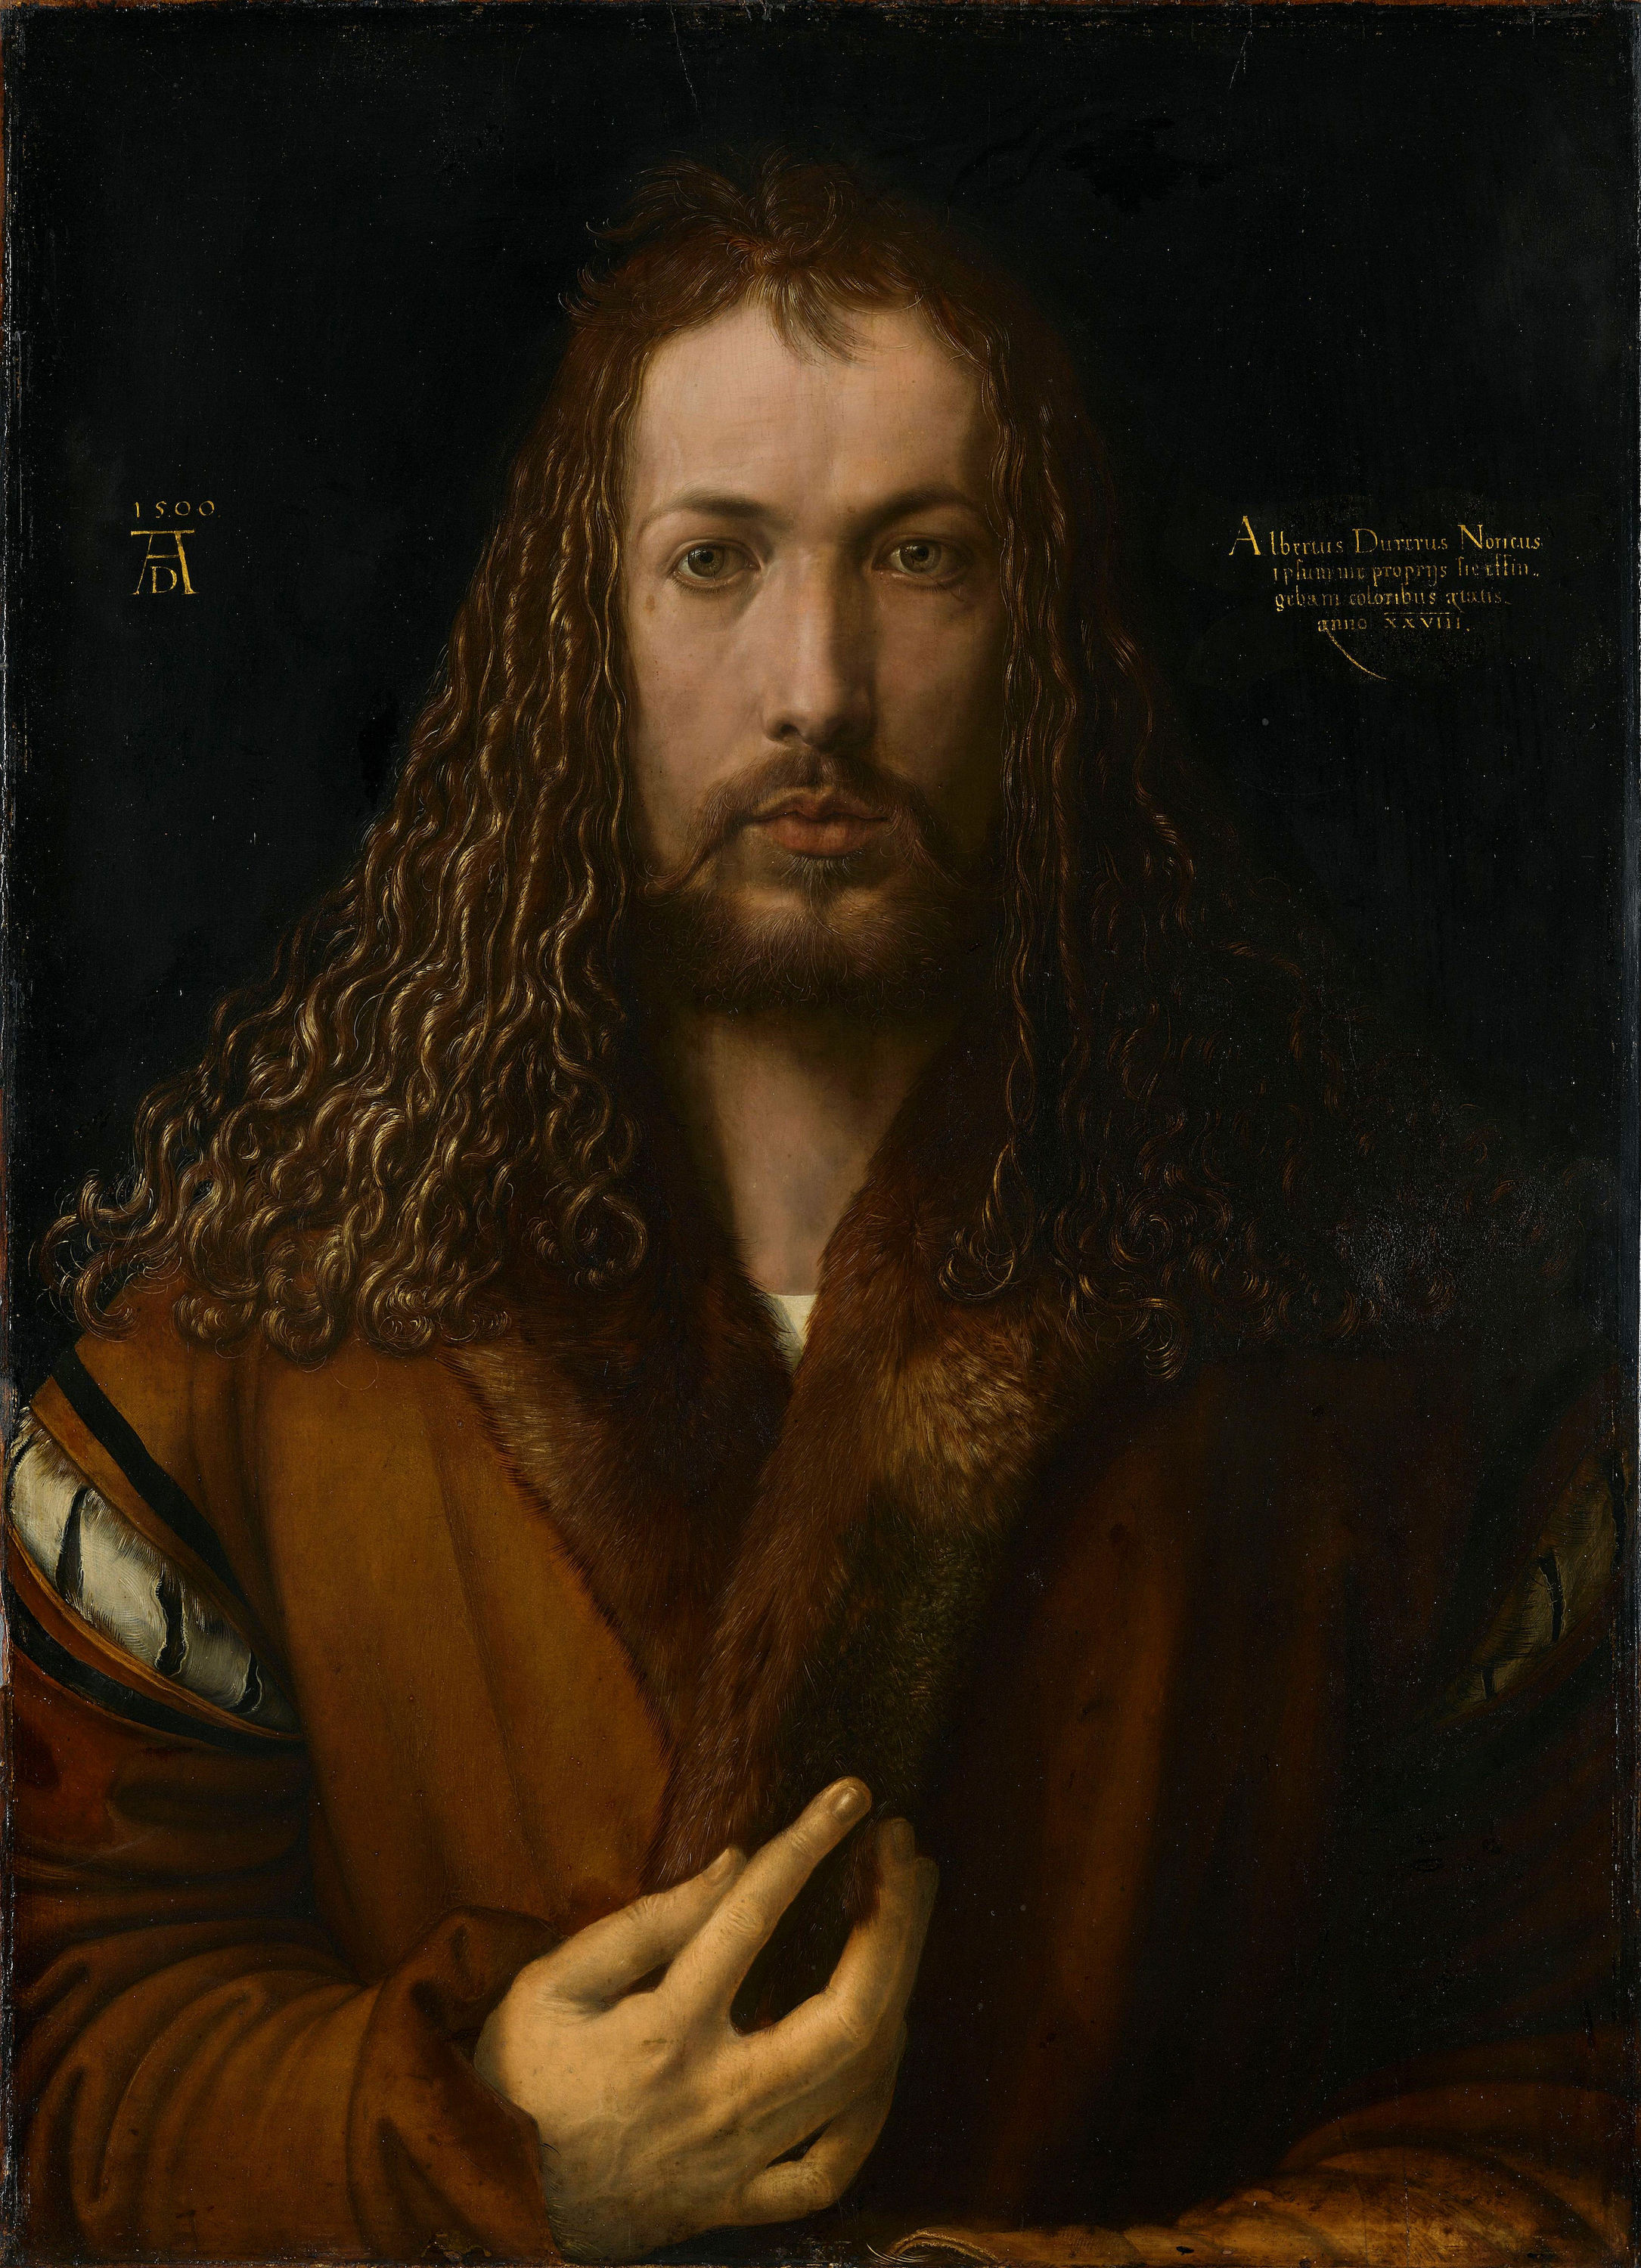 Self-Portrait by Albrecht Dürer - 1500 - 67.1 × 48.9 cm Alte Pinakothek